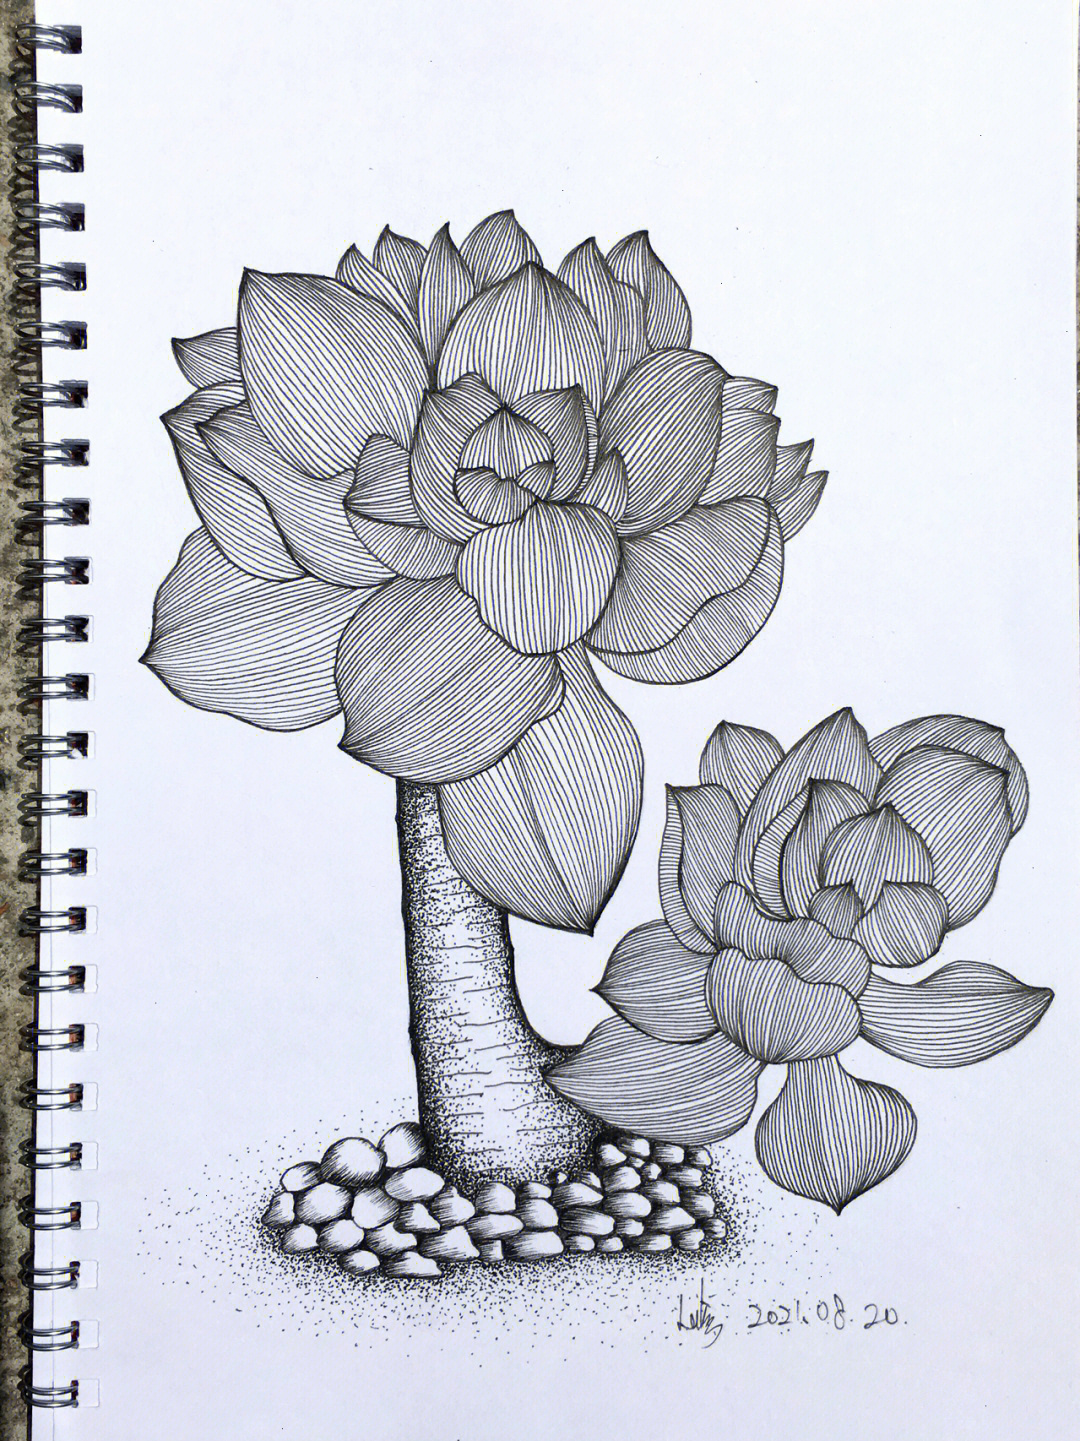 用线描的方法画植物图片